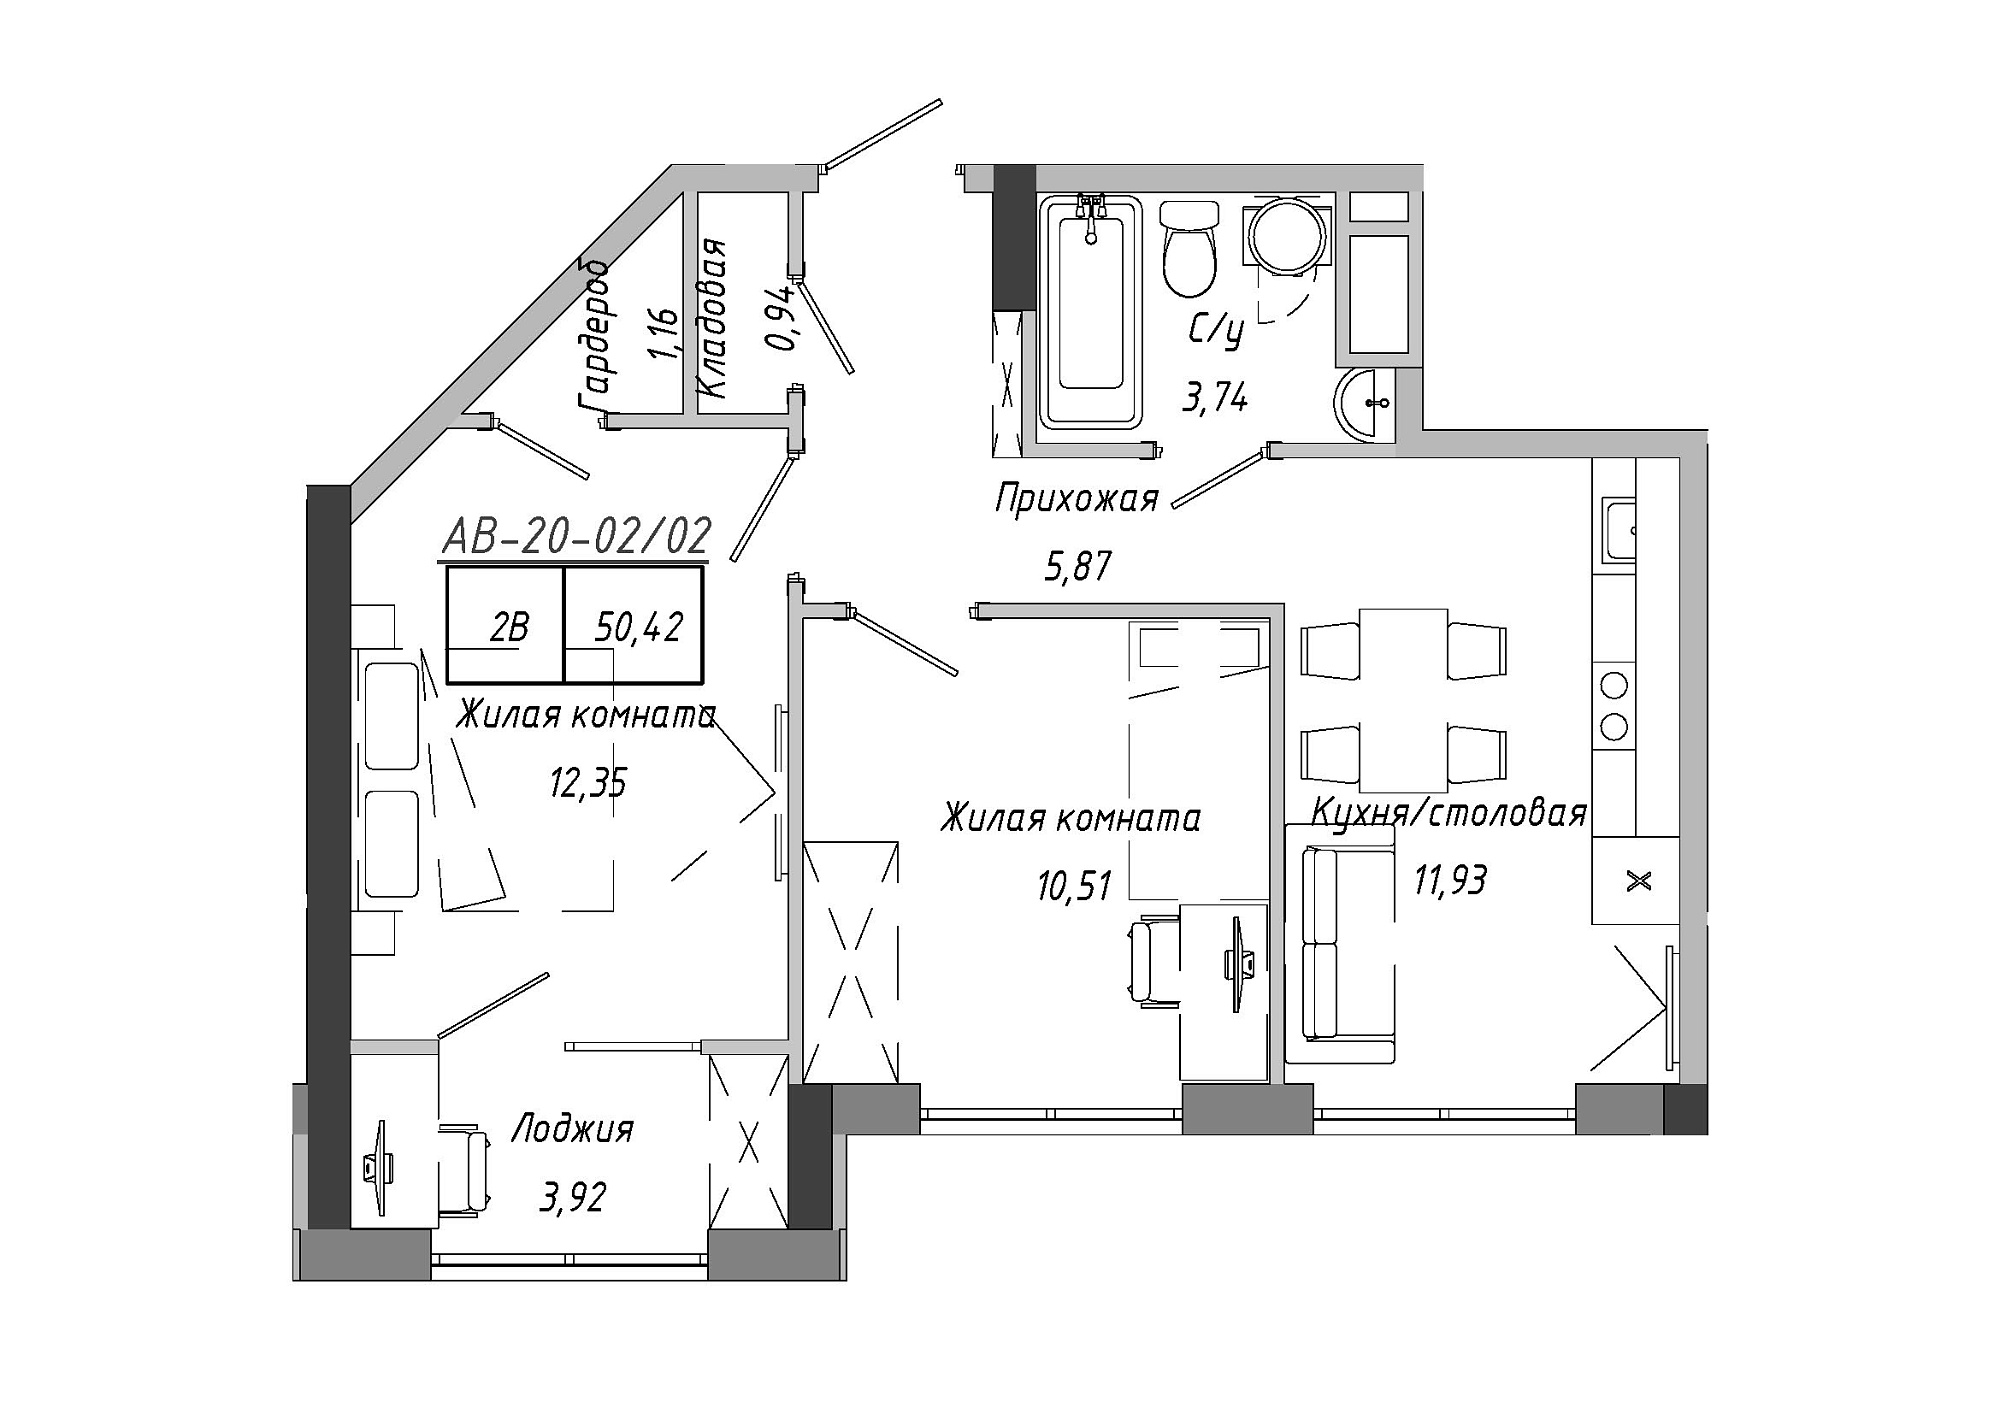 Планировка 2-к квартира площей 50.42м2, AB-20-02/00002.